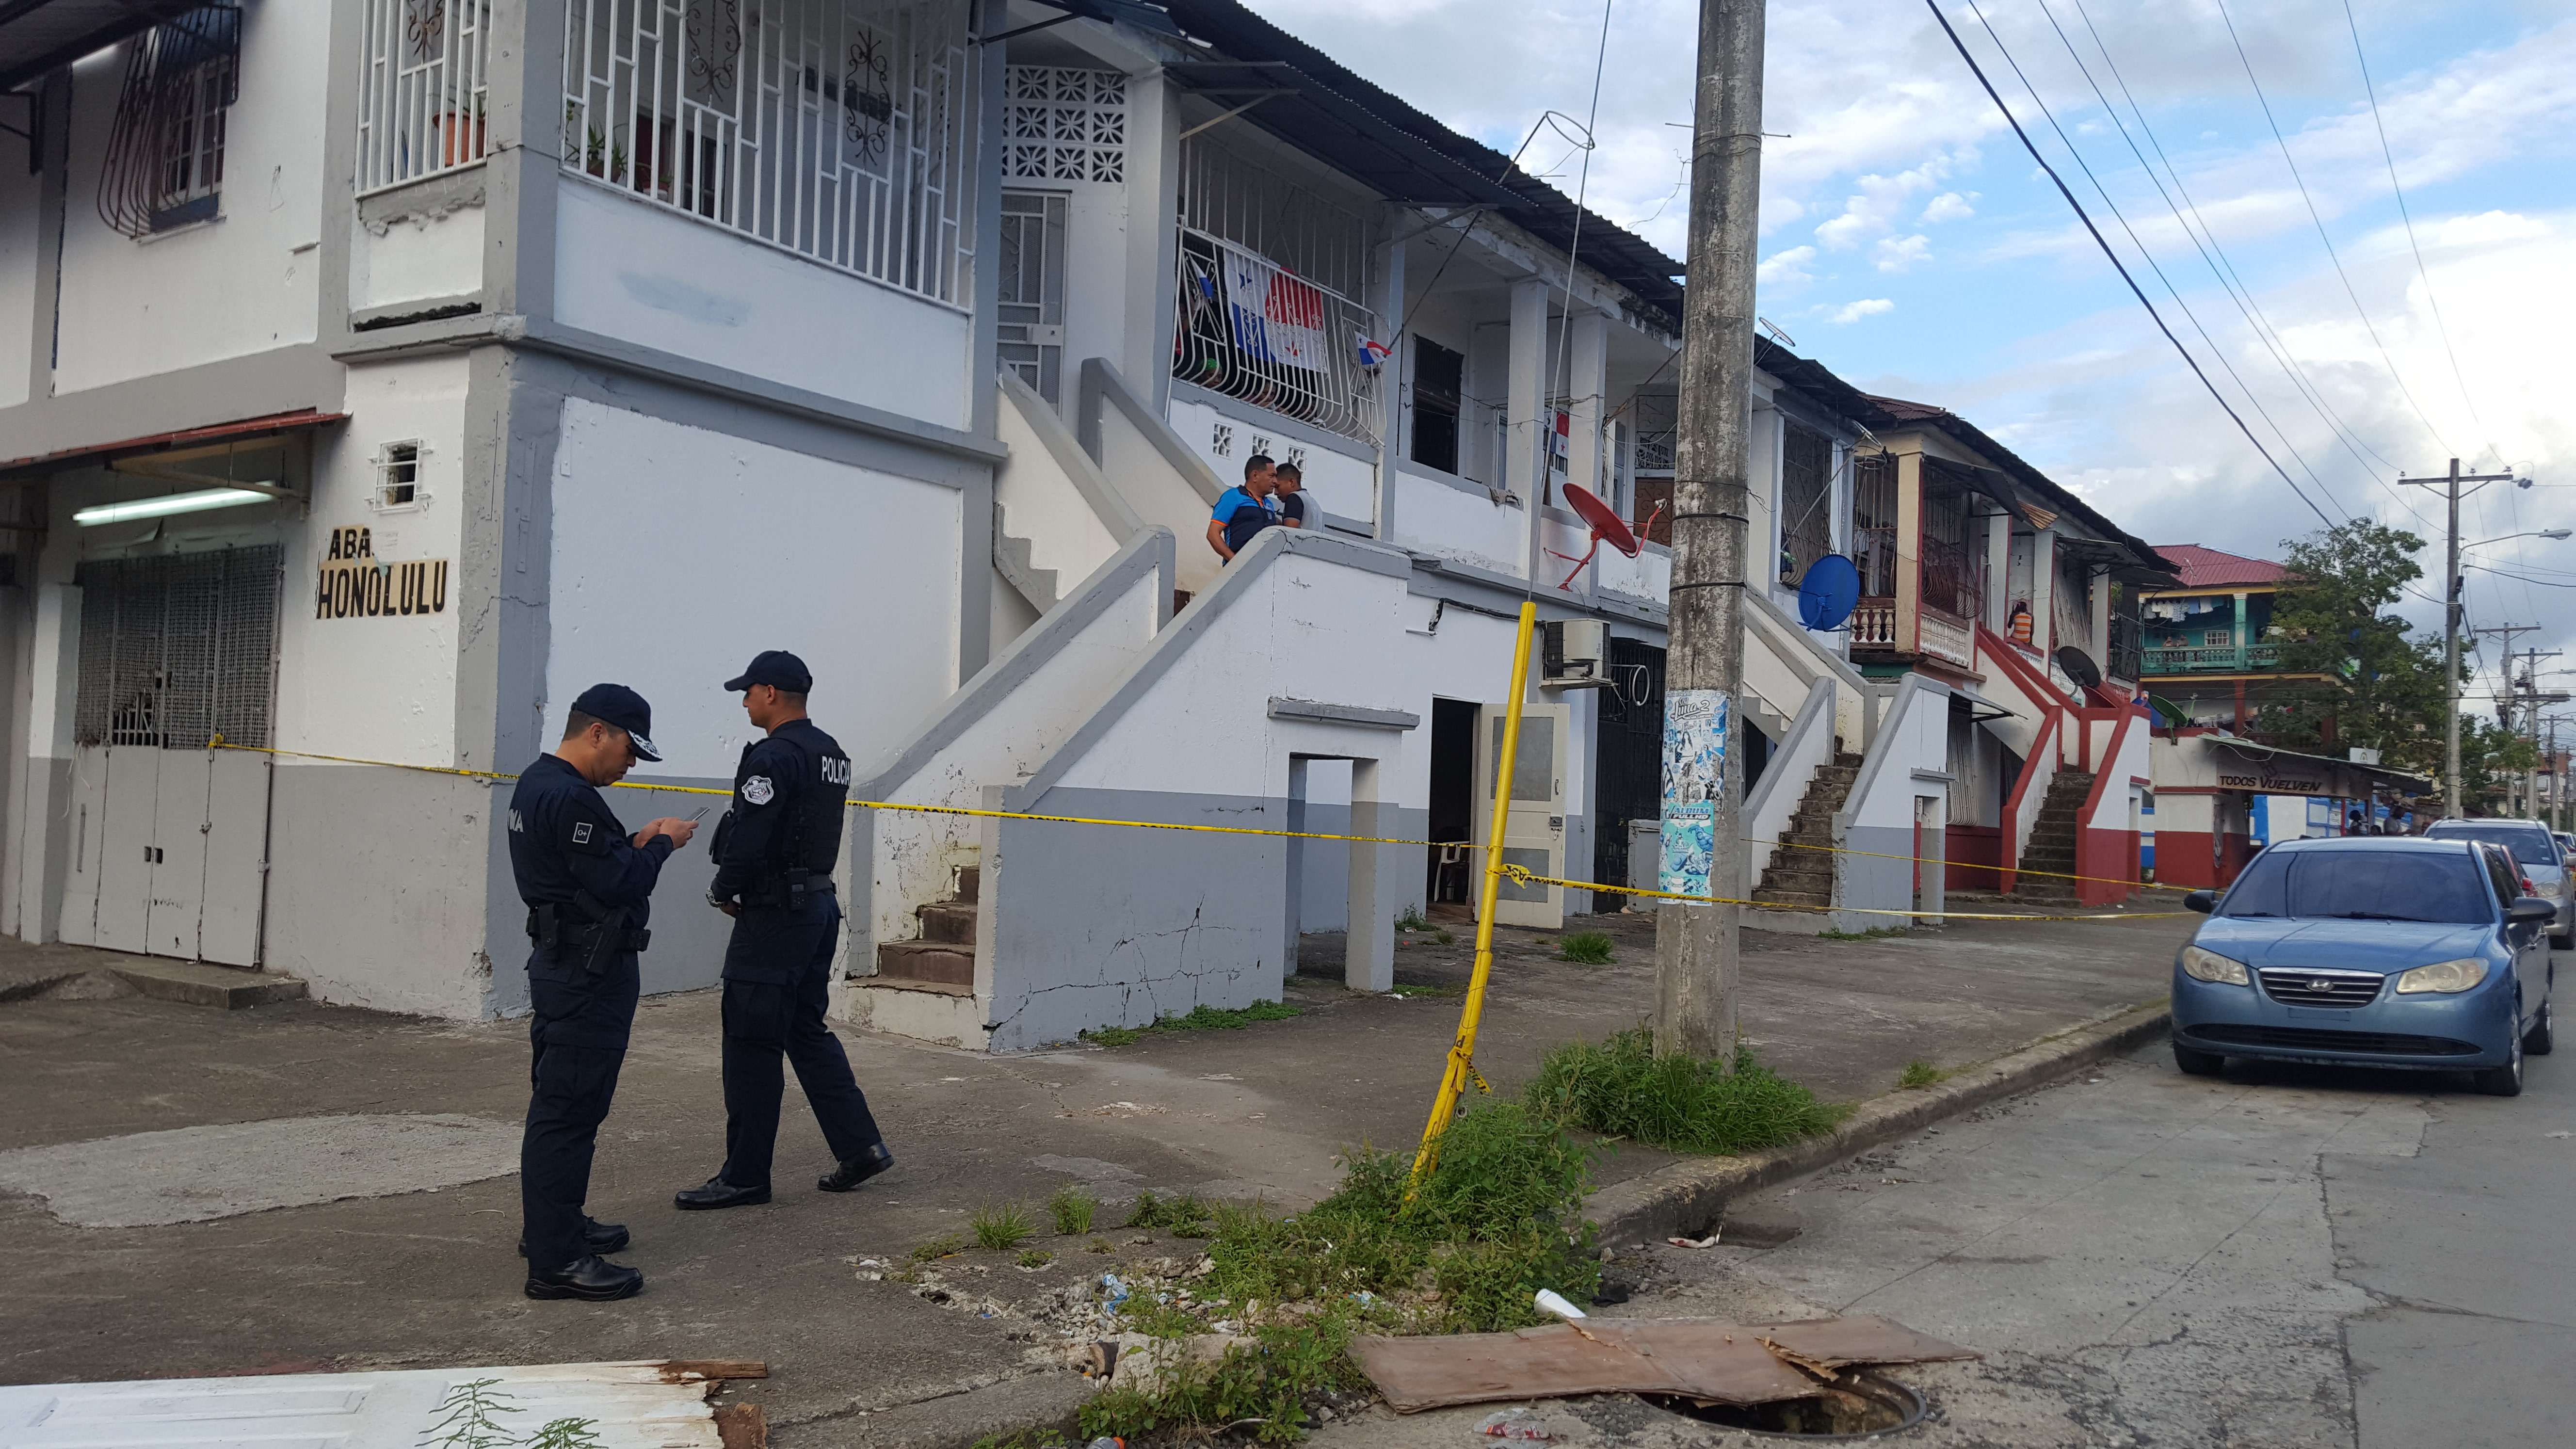 El Comisionado Alexis Muñoz, informó que la Policía Nacional se activó y se logró la captura de unos sospechosos. / Foto: Delfia Cortez